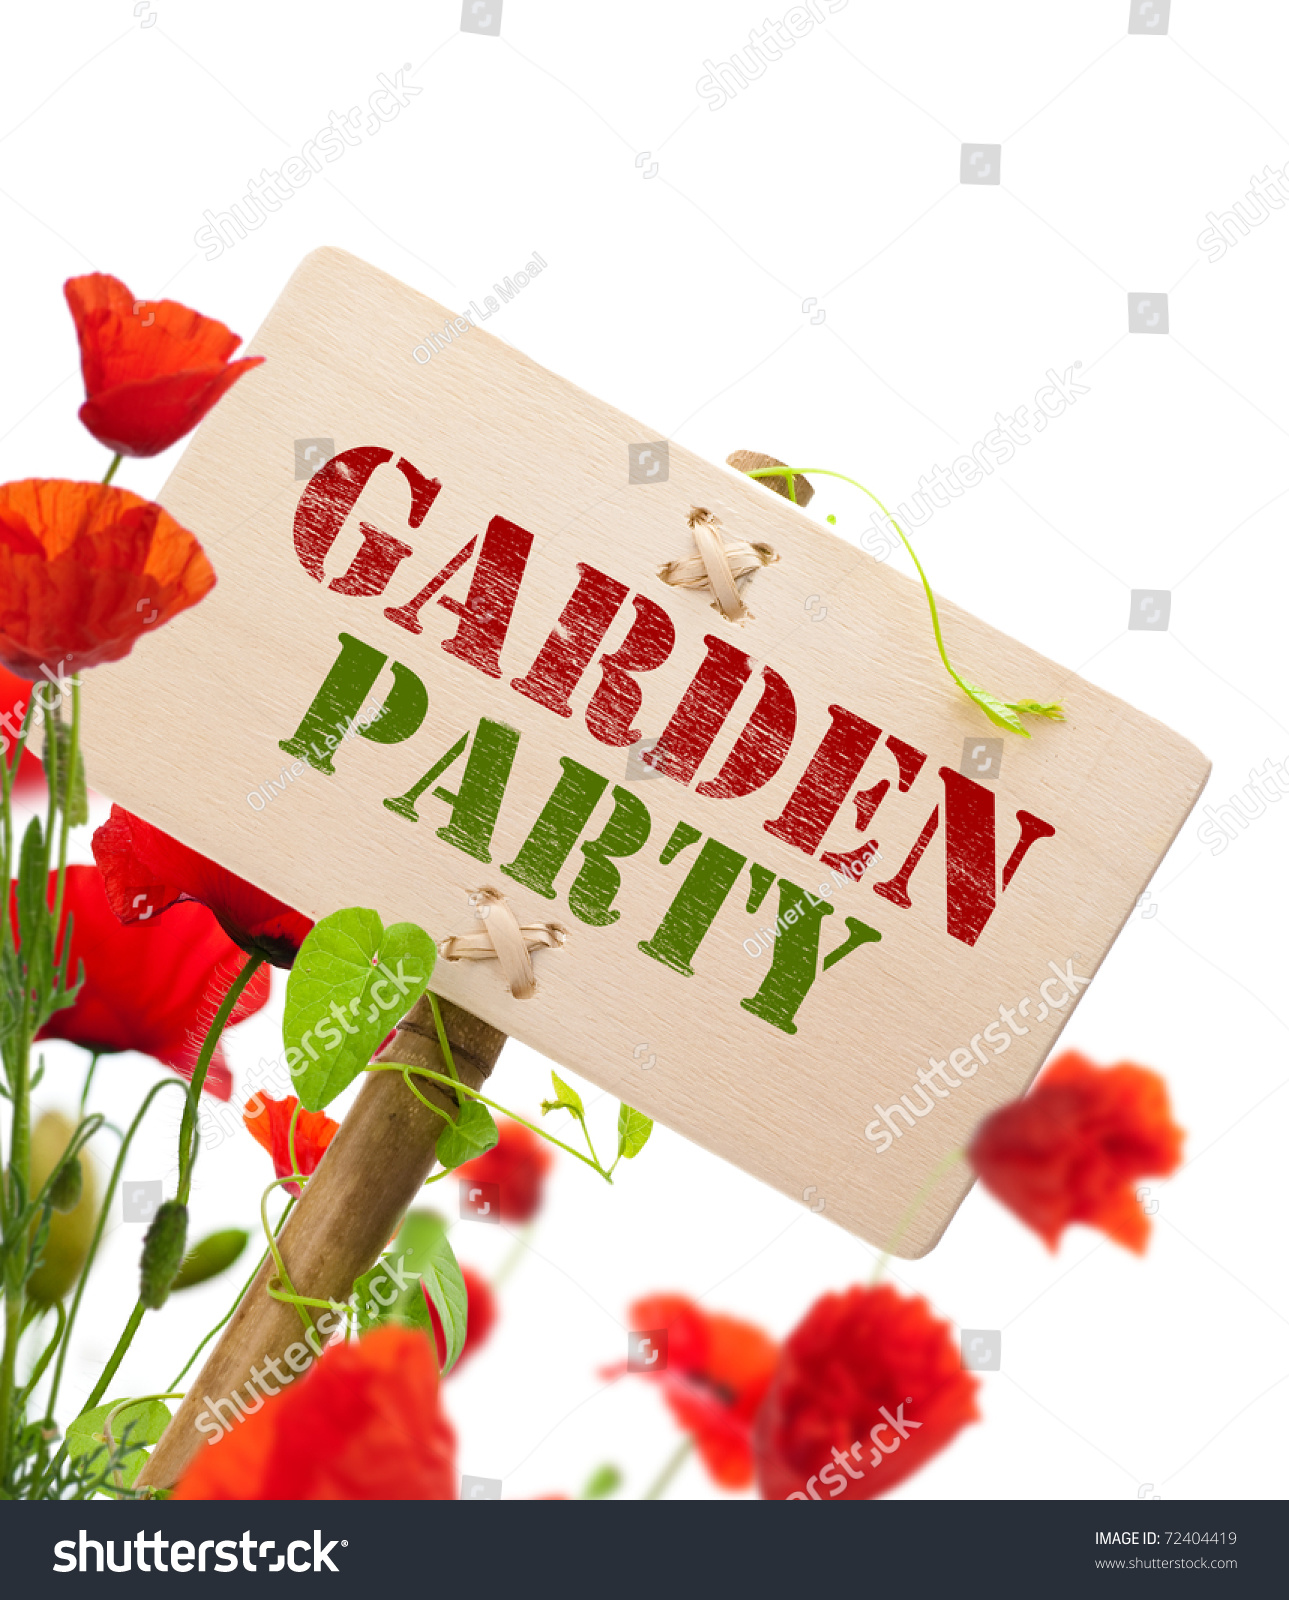 free clip art garden party - photo #12